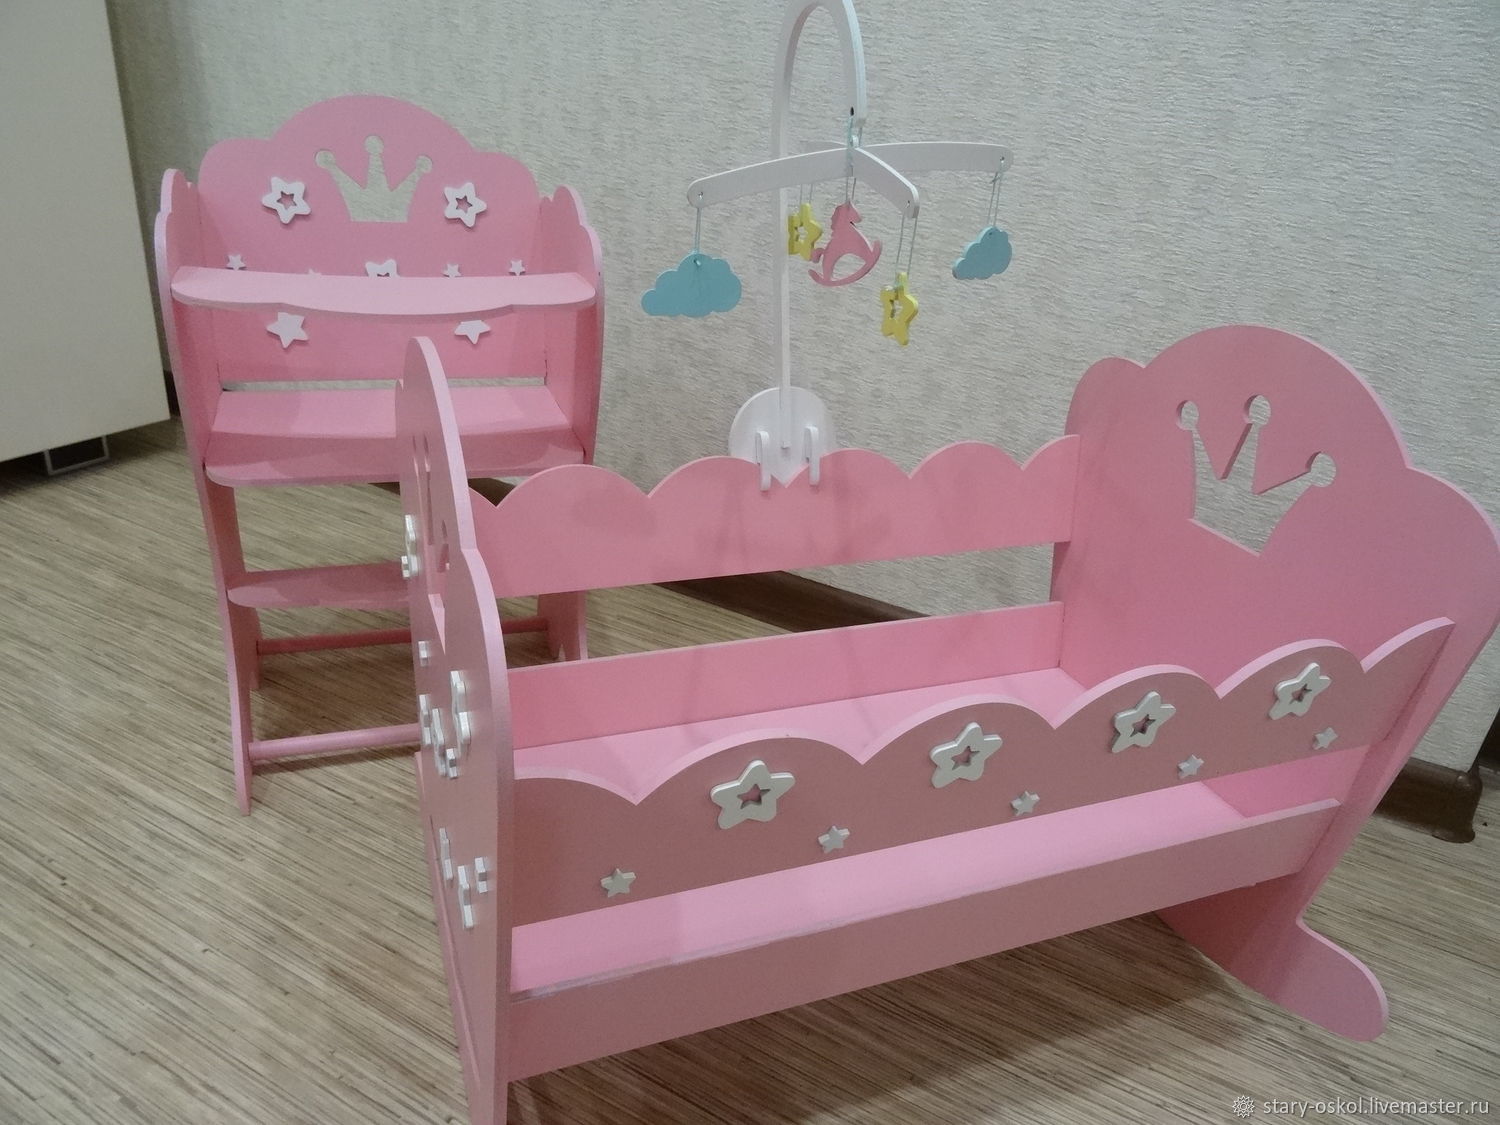 мебель для беби бона своими руками из подручных материалов